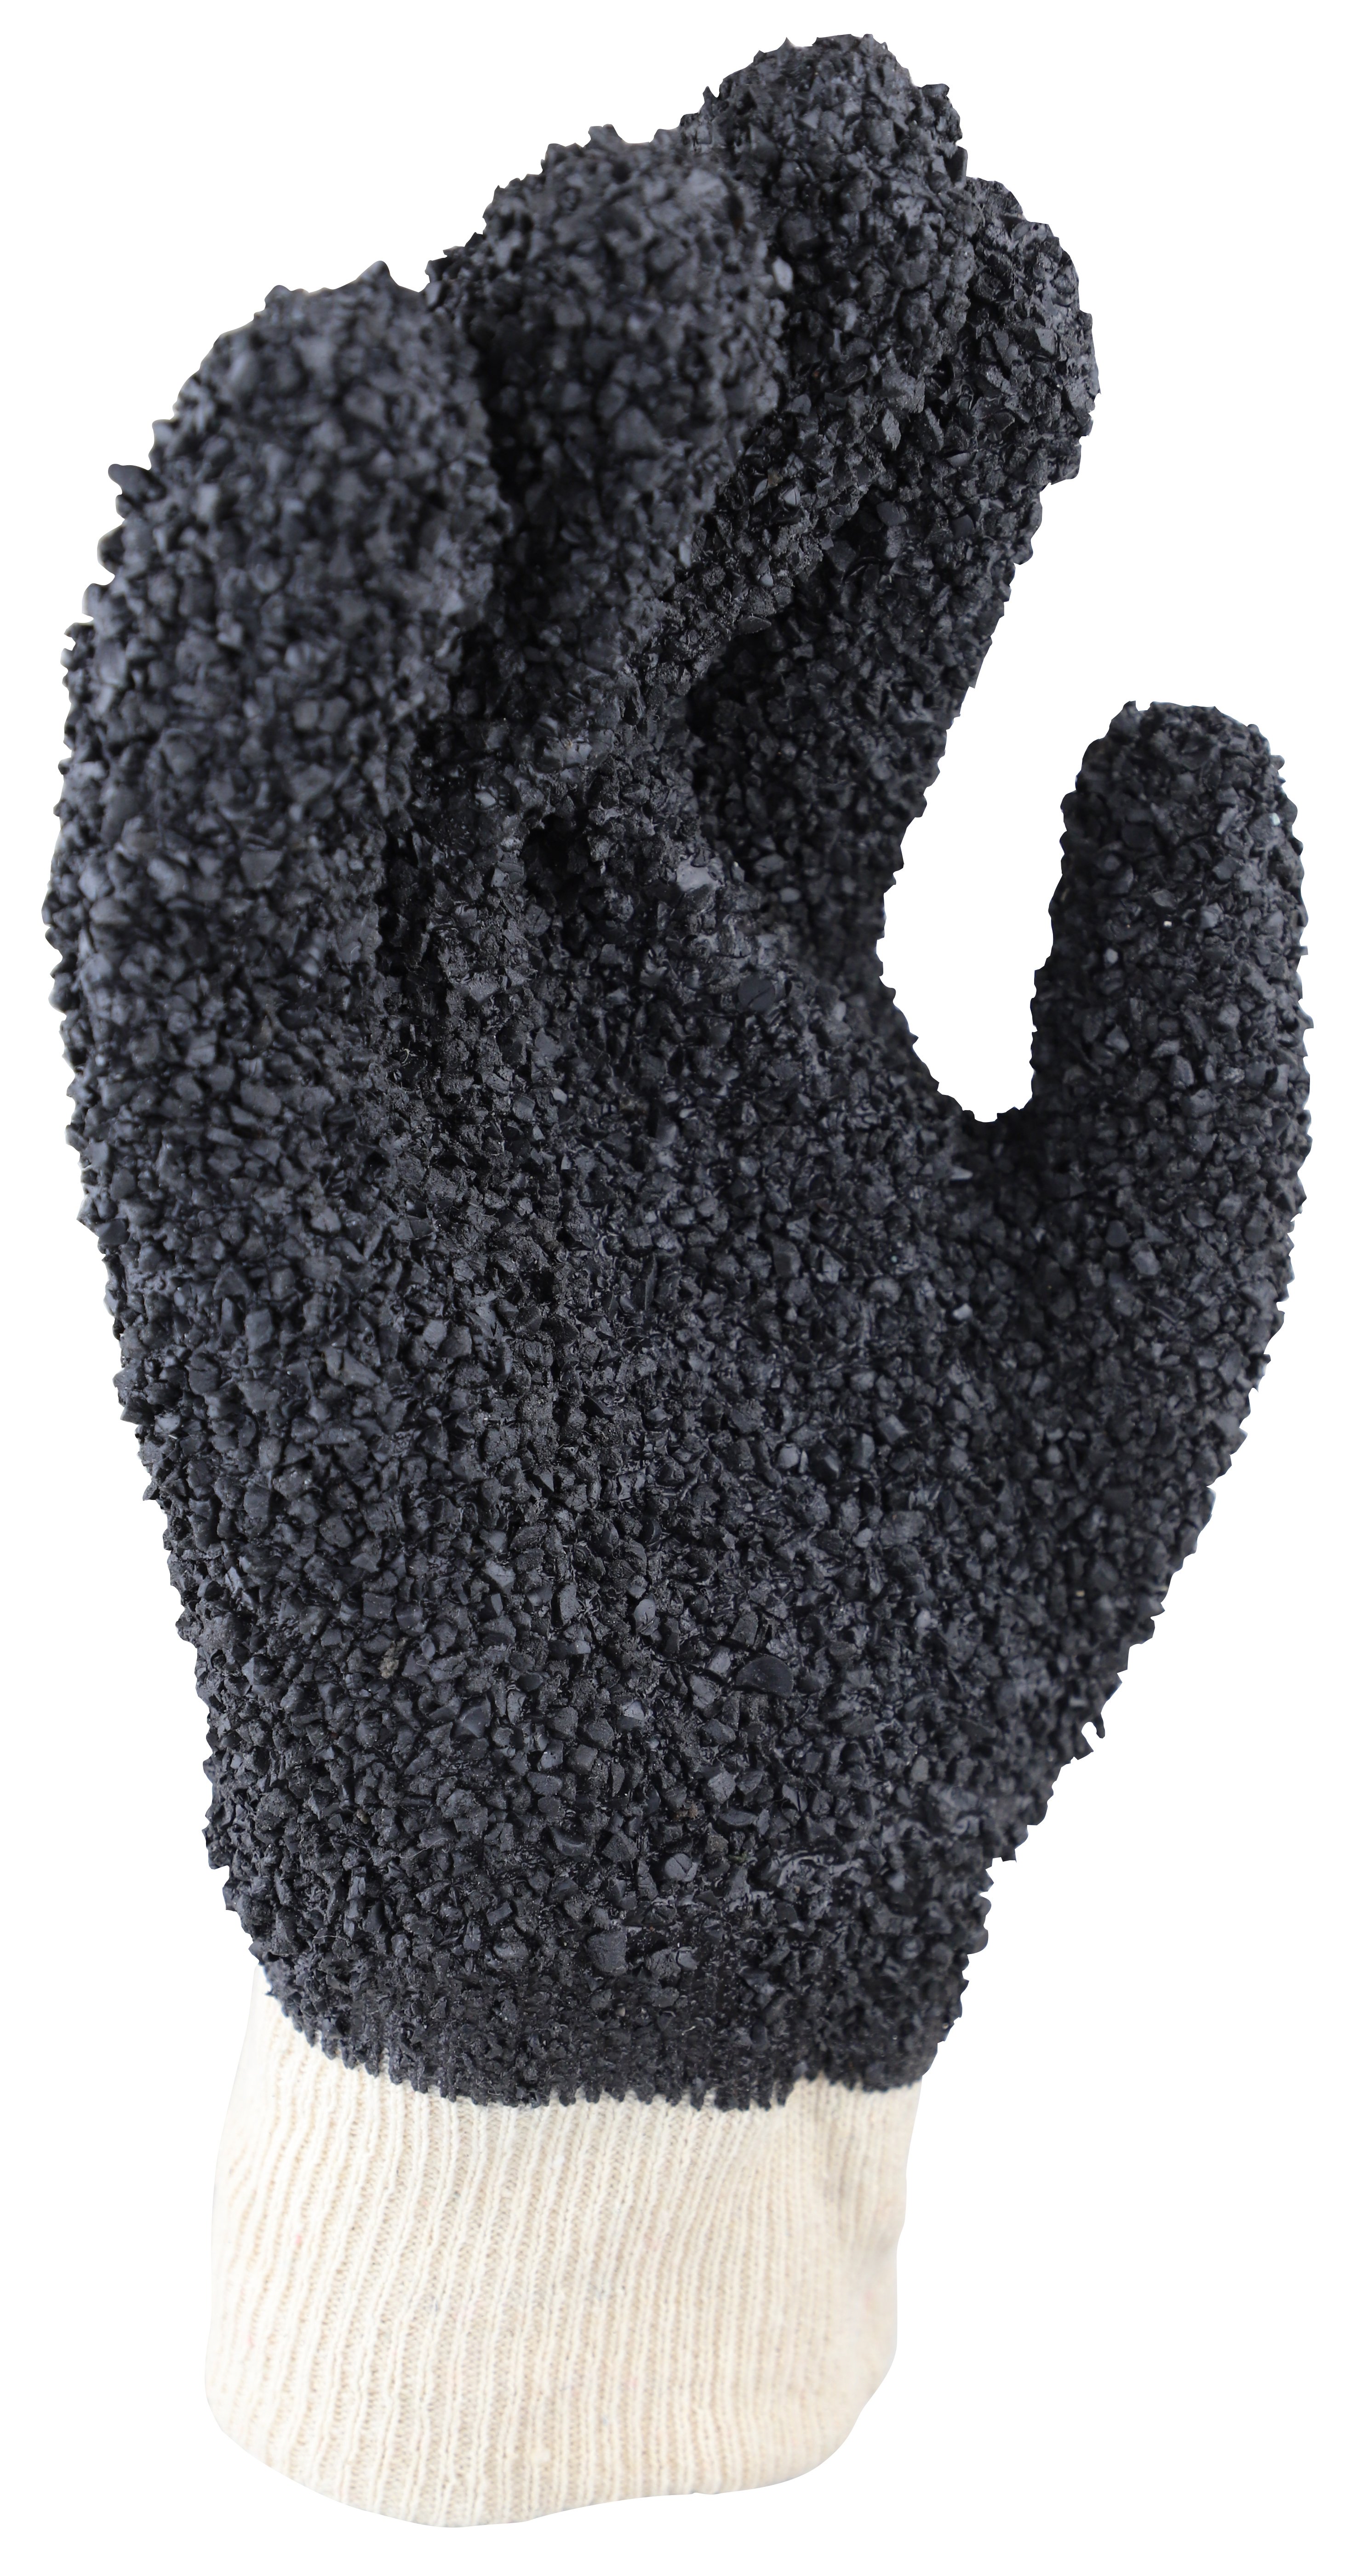 'Grizzly' Black PVC Debudding Glove